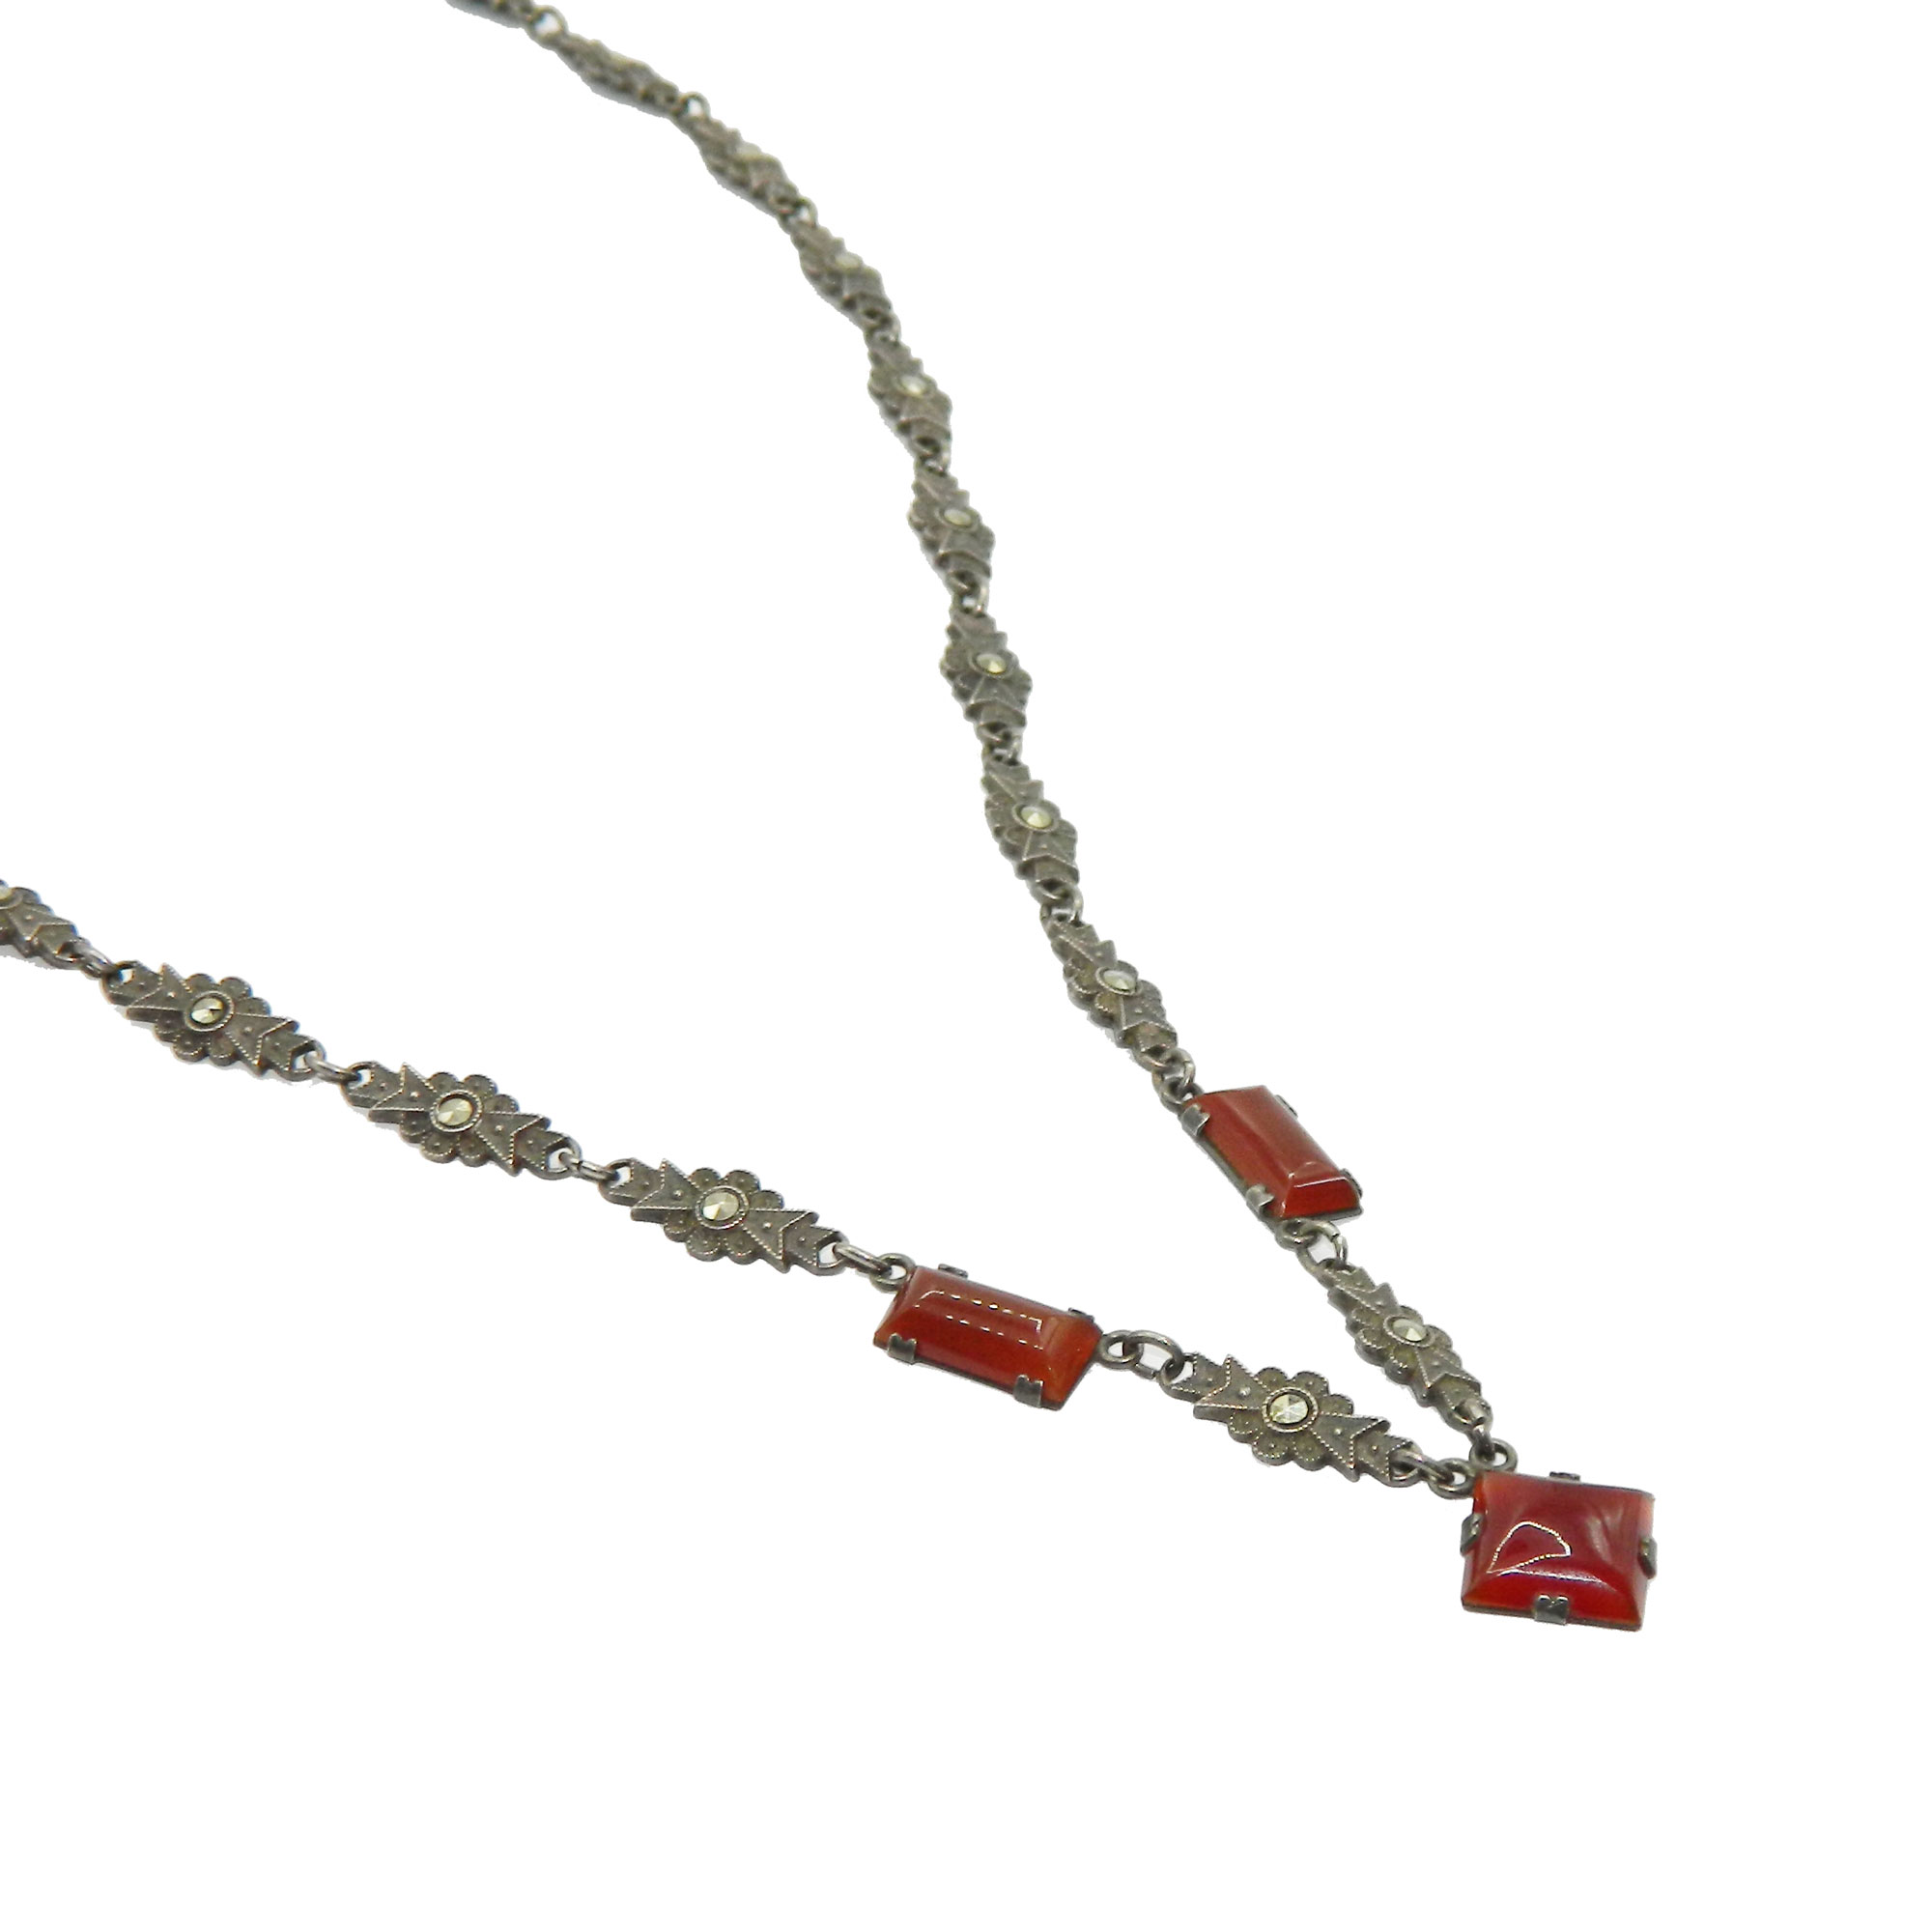 1920s Art Deco pendant necklace